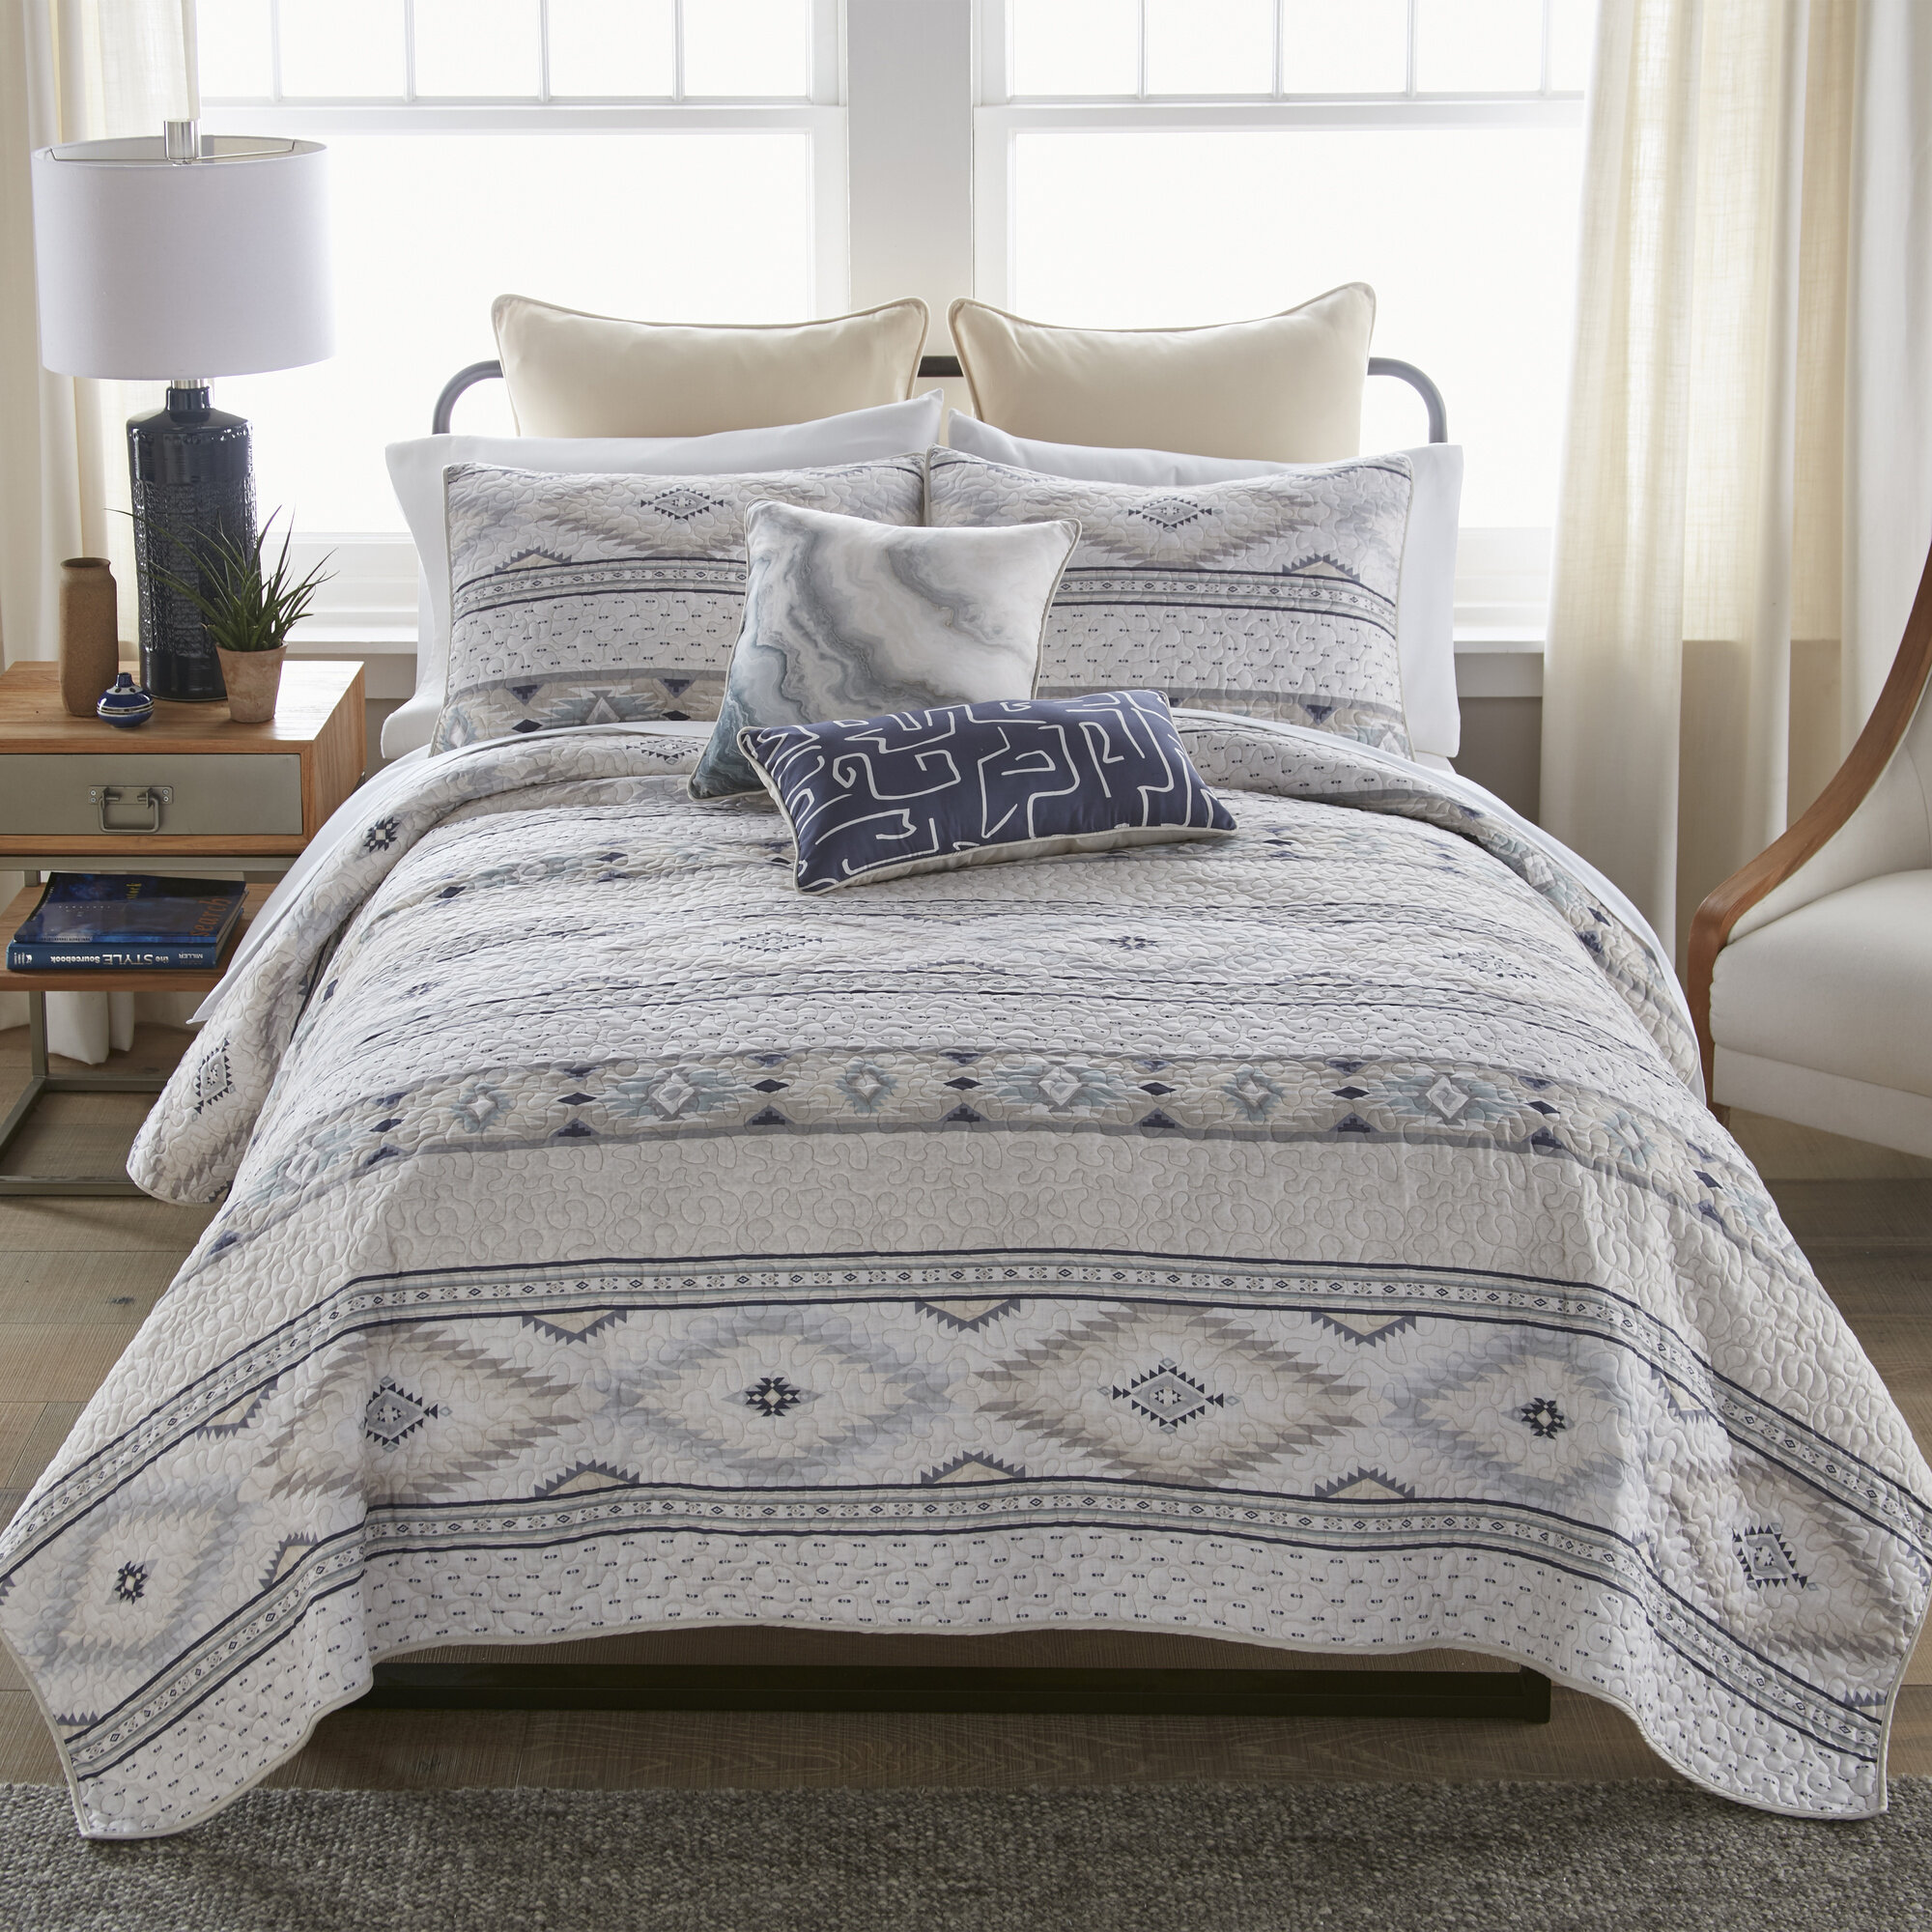 Navy Hypo Allergenic Blanket Standard Full Queen Bed Spread Microfiber Bedding 